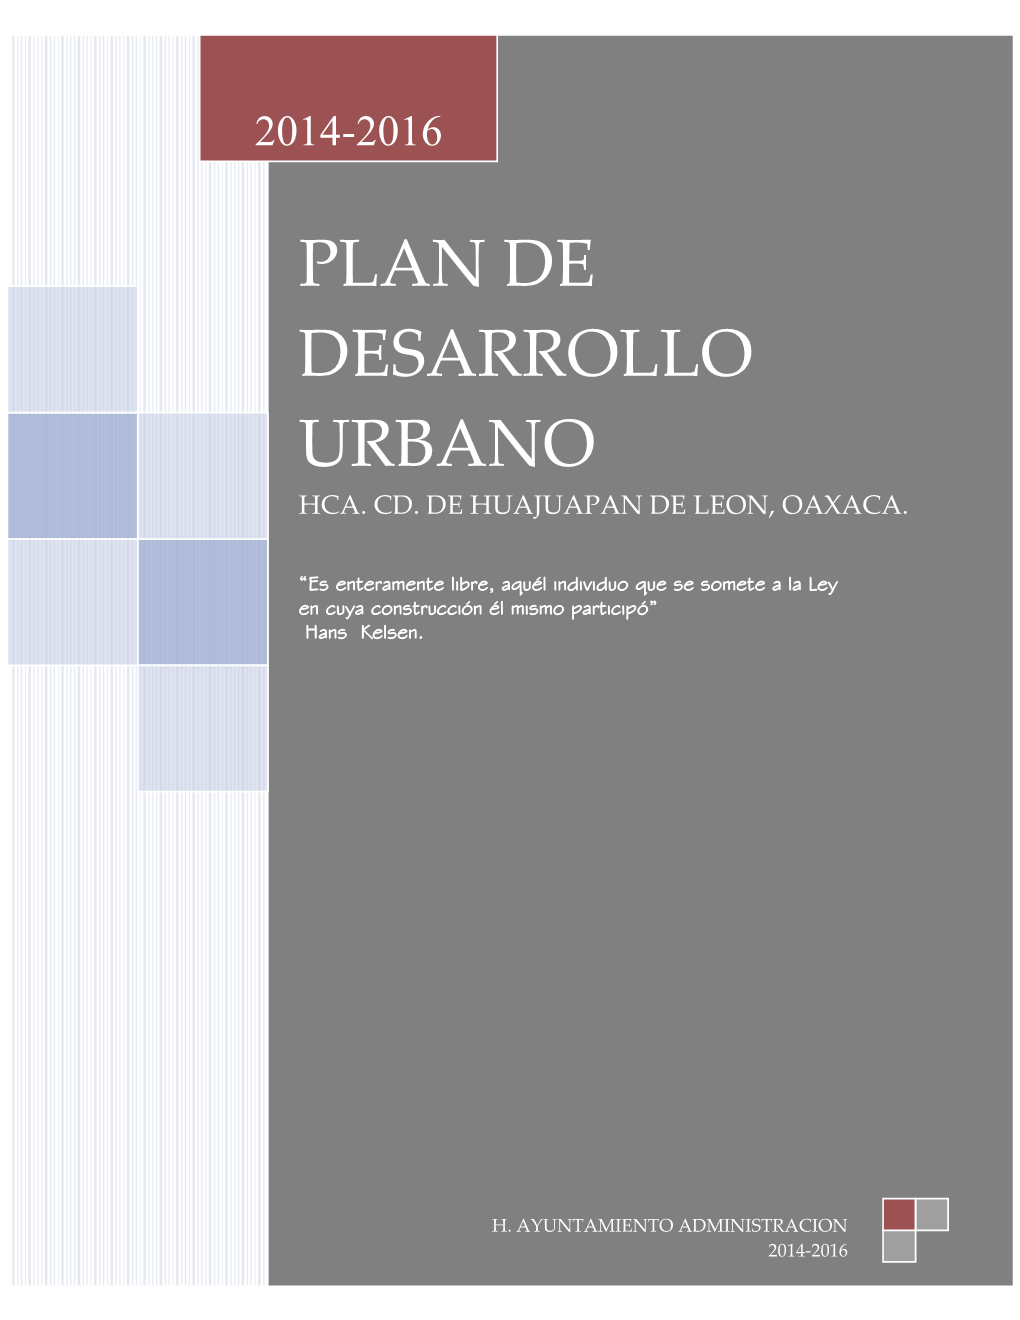 Plan De Desarrollo Urbano 2014-2016